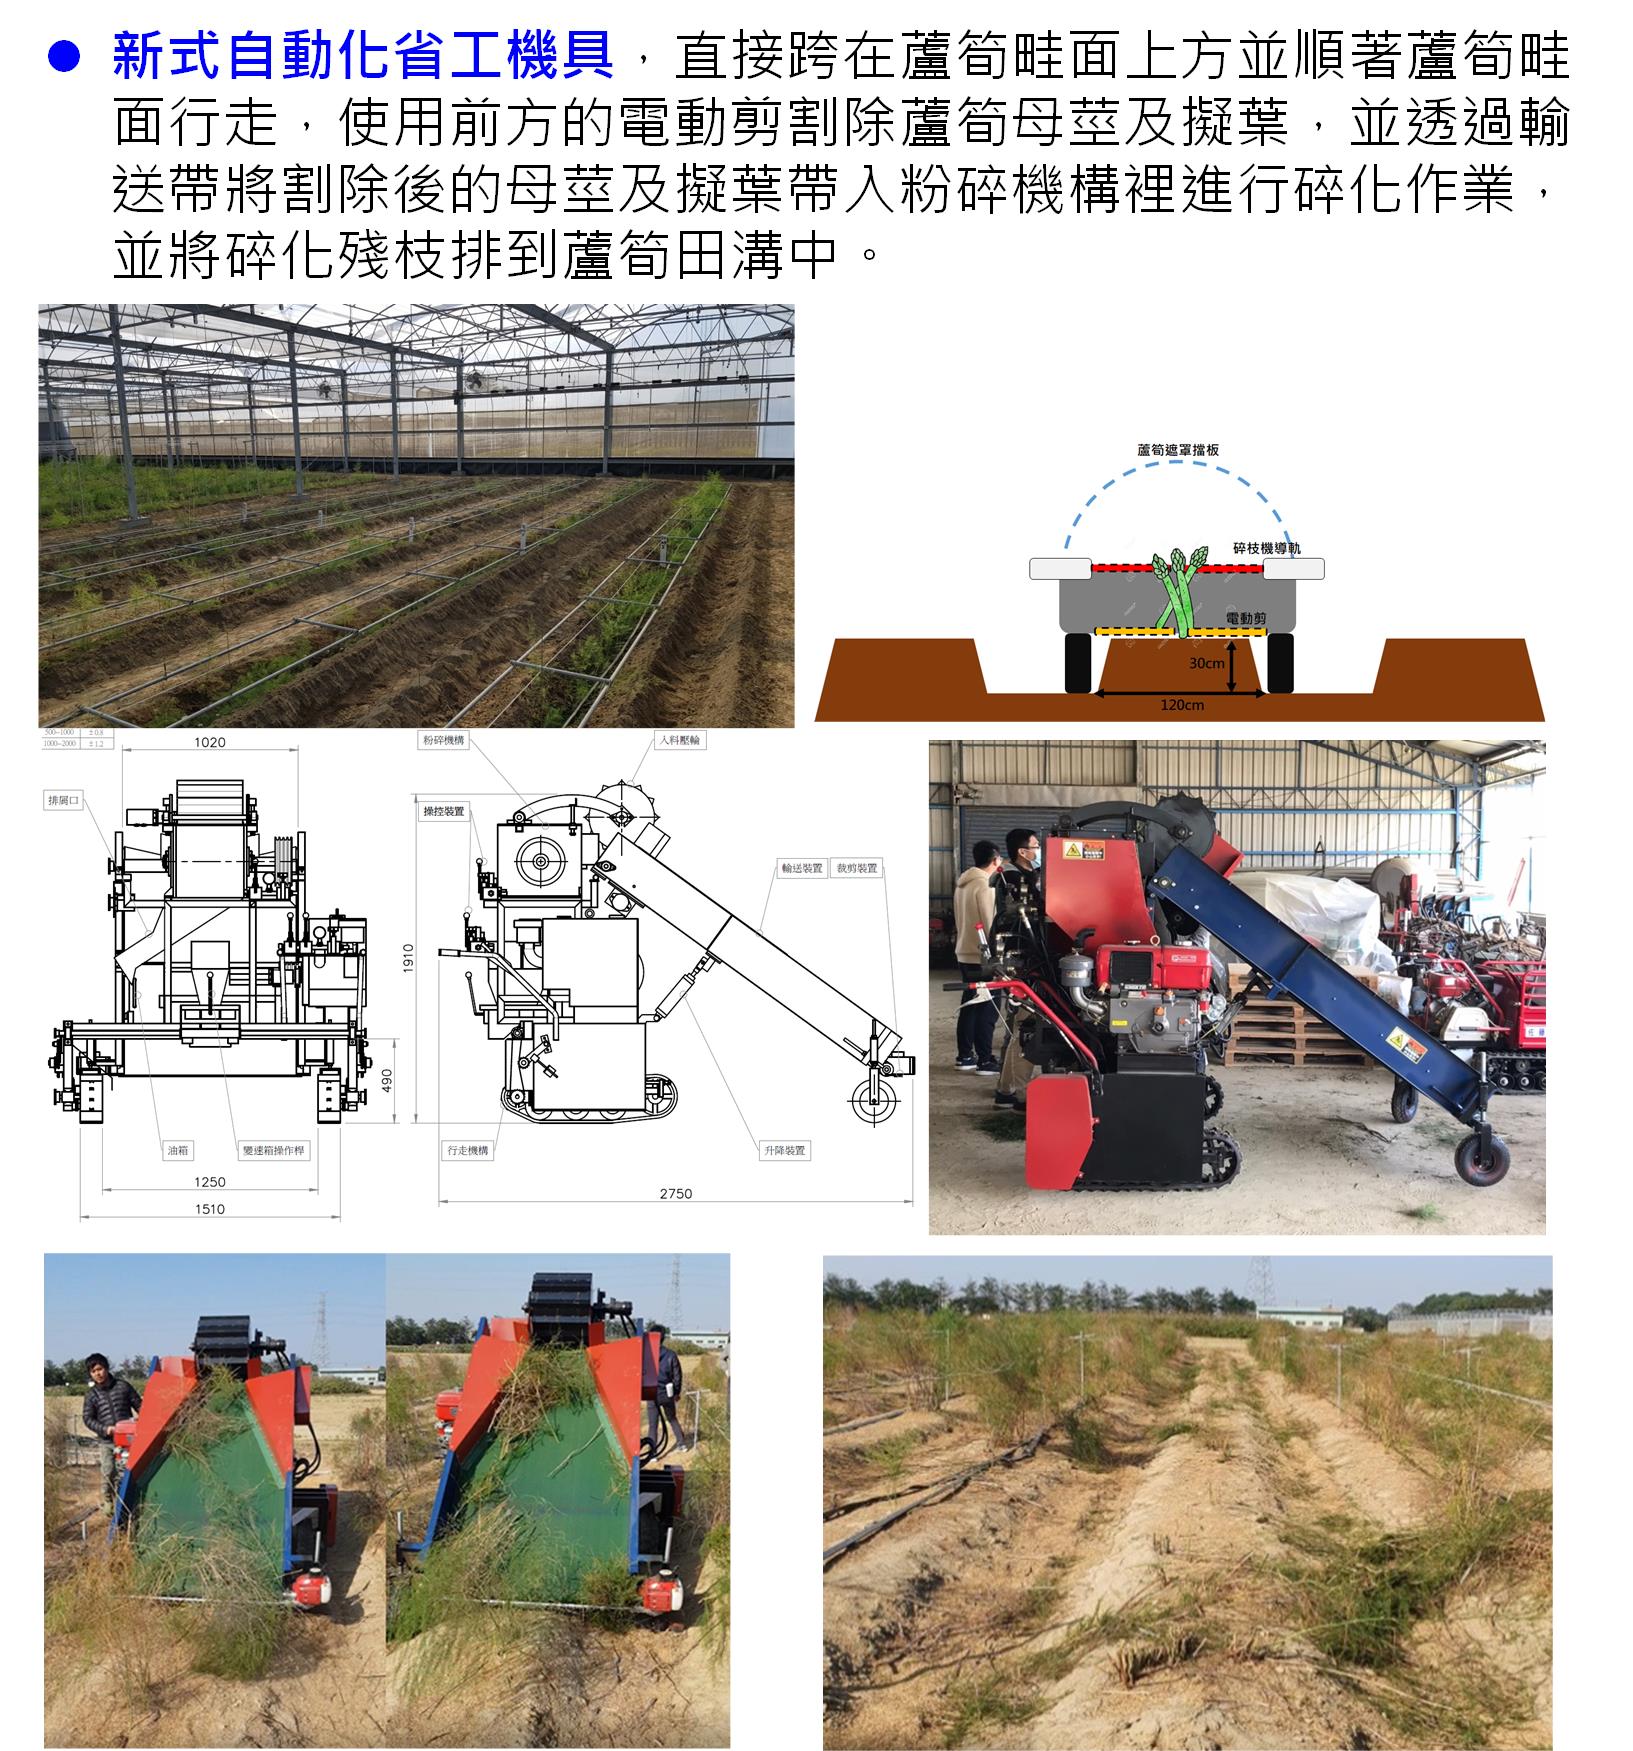 設施蘆筍農業機具與智能作物生產決策系統